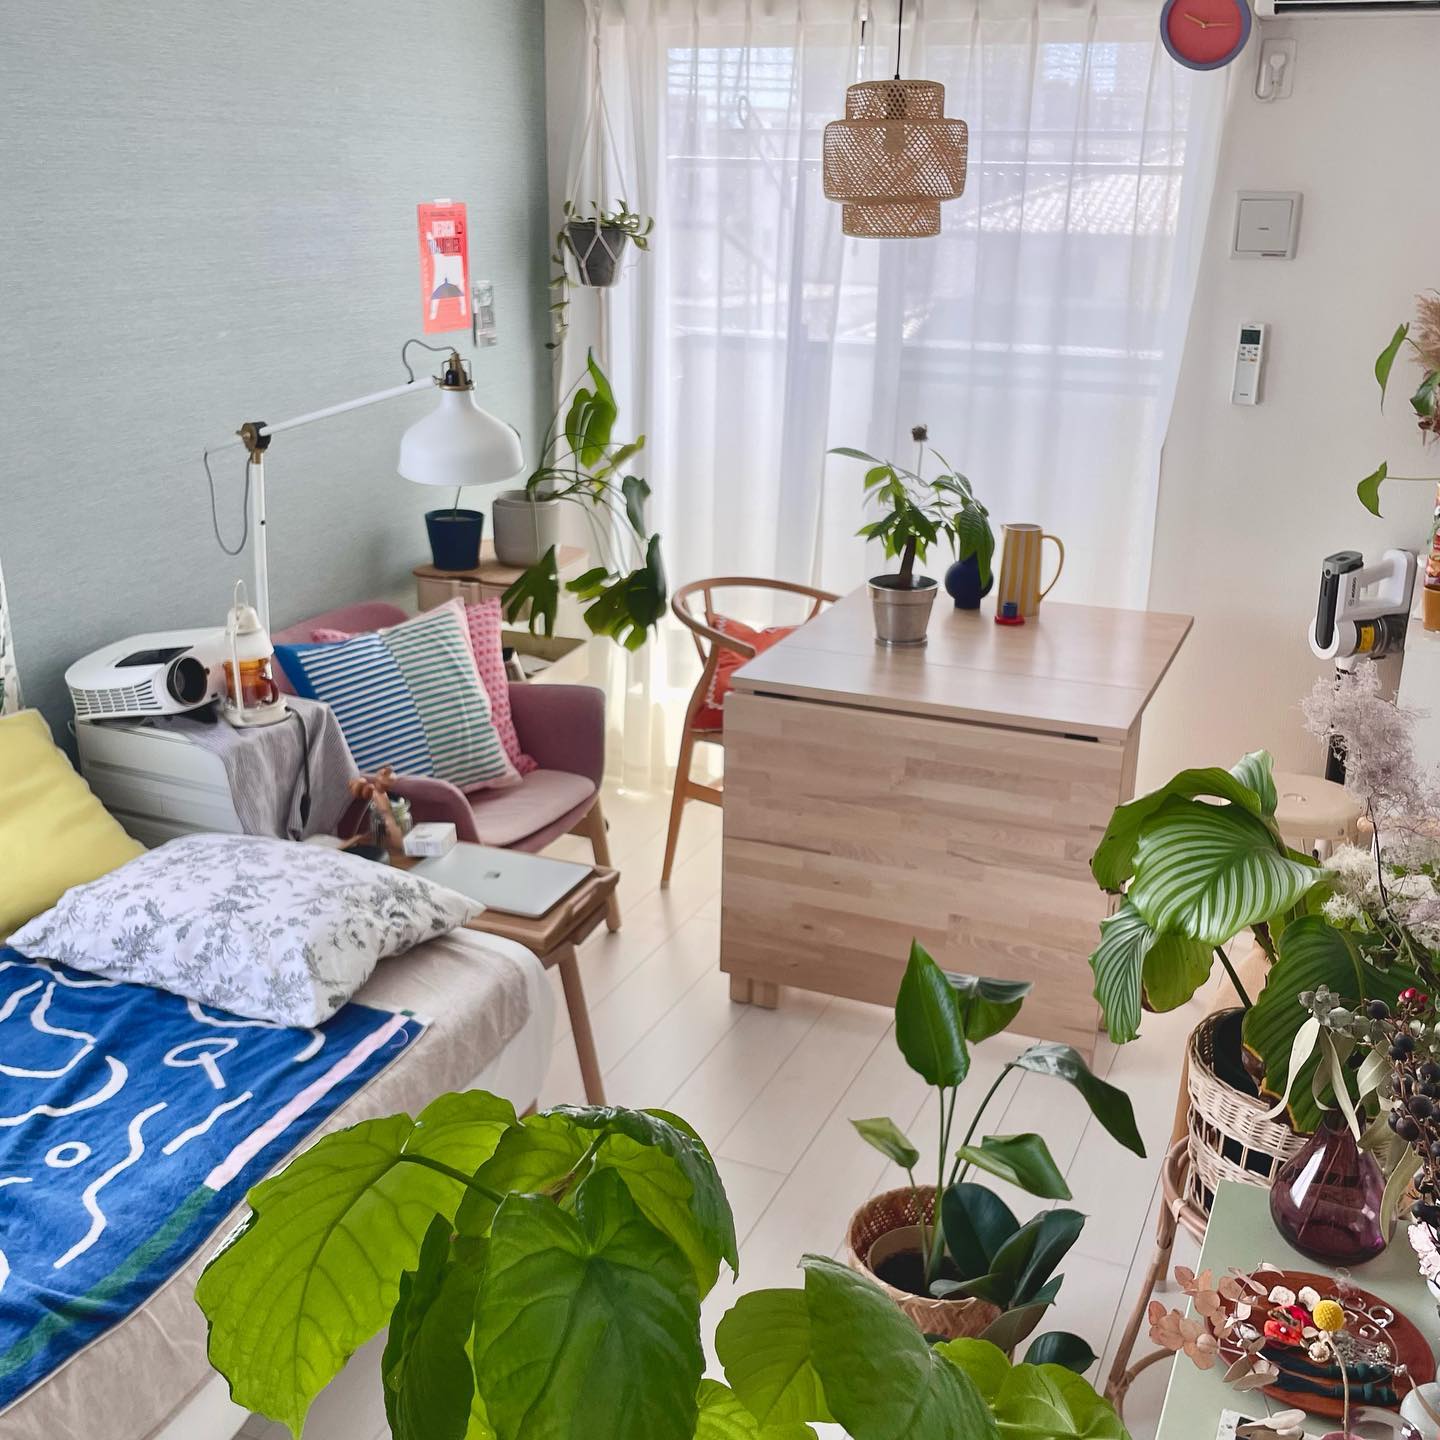 ブルーグリーンを中心にカラフルなアイテムをバランスよく使いながら、花や植物をたくさん取り入れた素敵な空間をつくられている、一人暮らし・9畳1Kのお部屋を拝見しました。